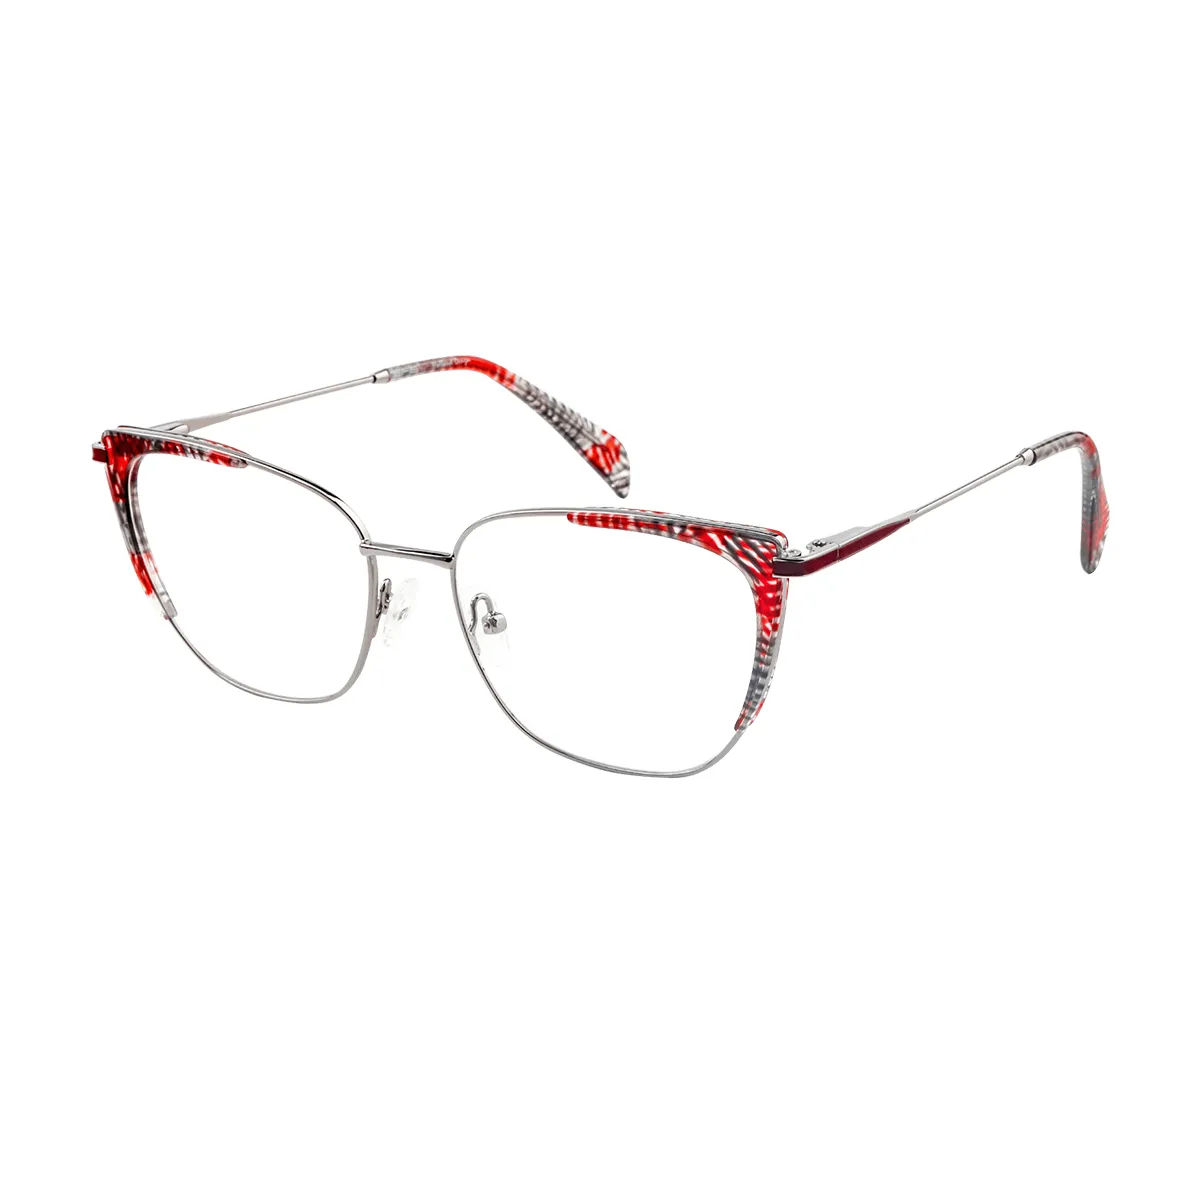 Rebecca - Square  Glasses for Women